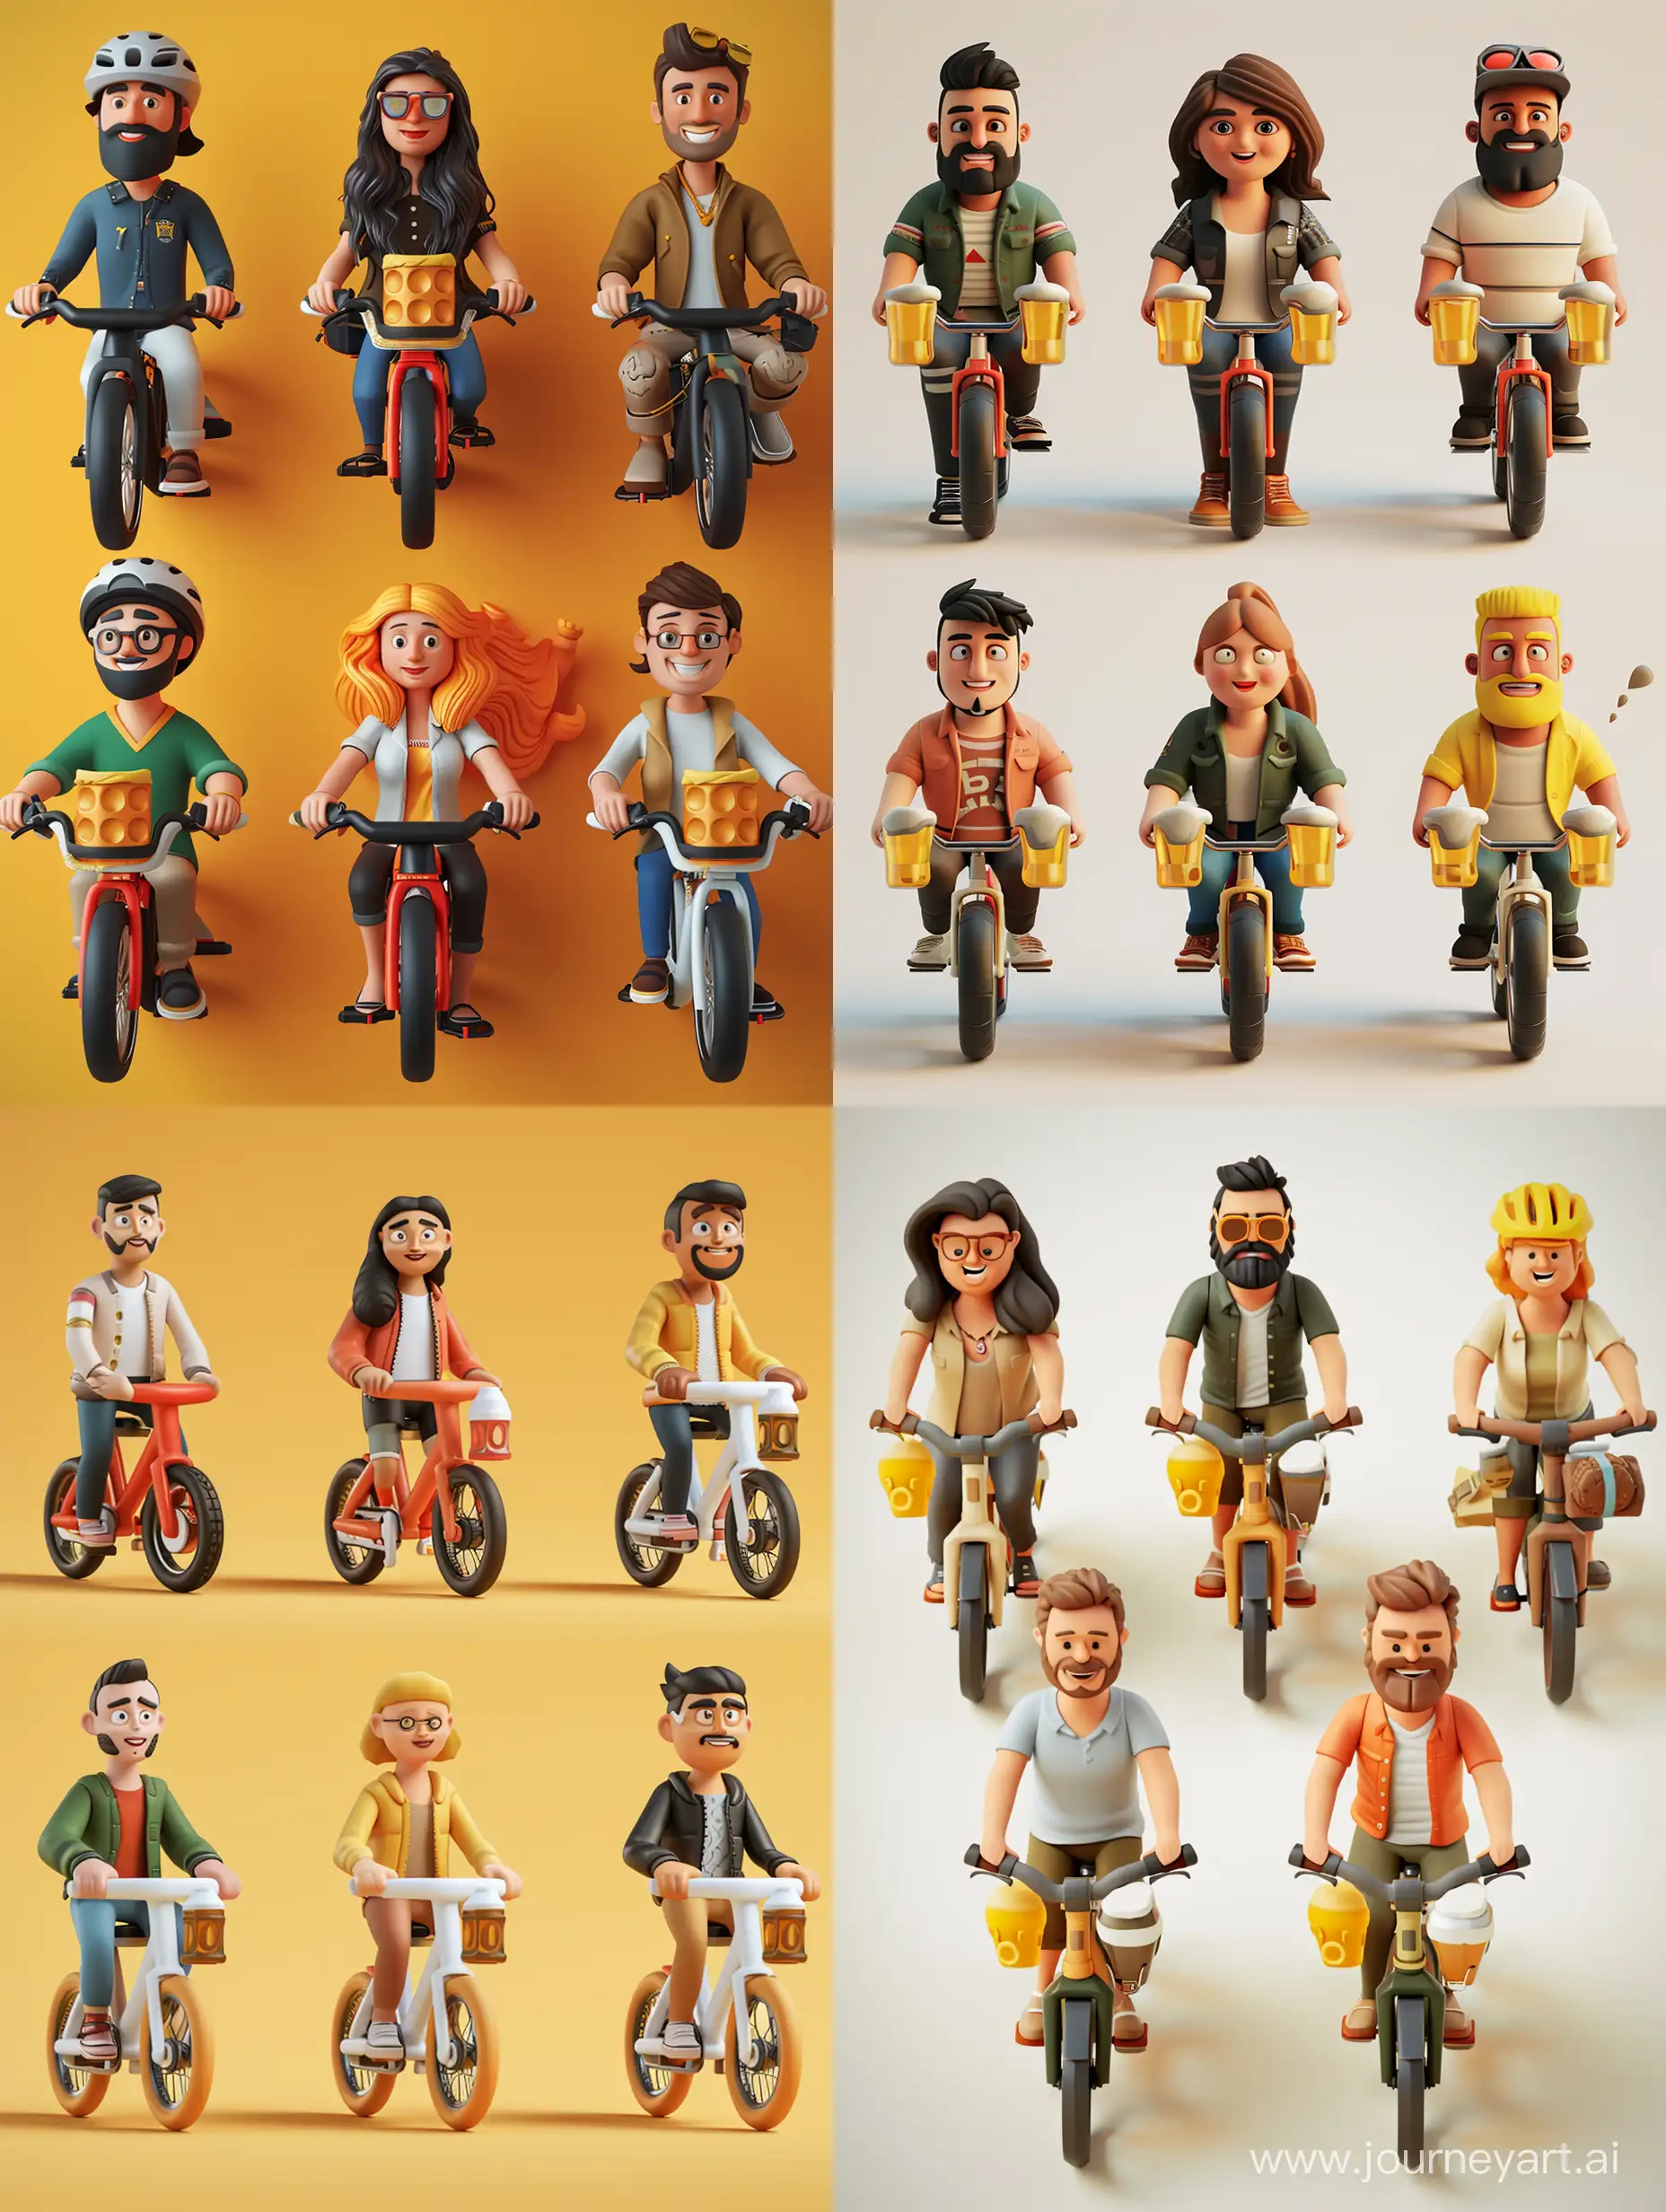 Создайте 3D-иллюстрацию из 6 персонажей, 4 персонажа мужского пола ,2 персонажа женского пола.Один персонаж женского пола брюнетка другой персонаж женского пола блондинка.Все персонажи одеты в одежду супергероев фильма «мстители». Все персонажи на велосипедах с пивом.